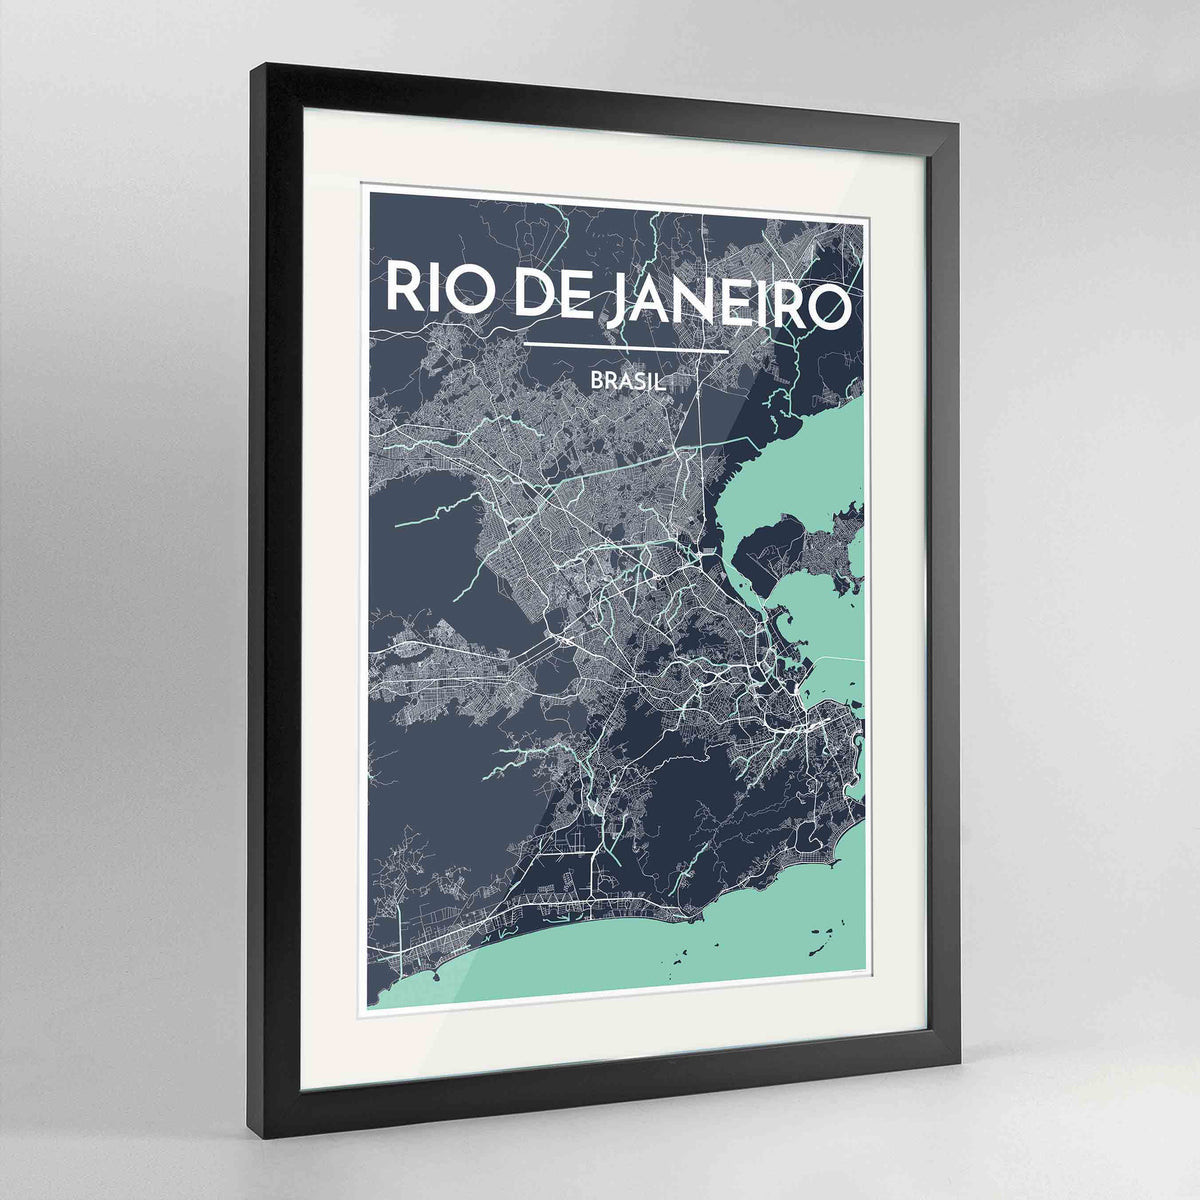 Framed Rio de Janeiro Map Art Print 24x36&quot; Contemporary Black frame Point Two Design Group